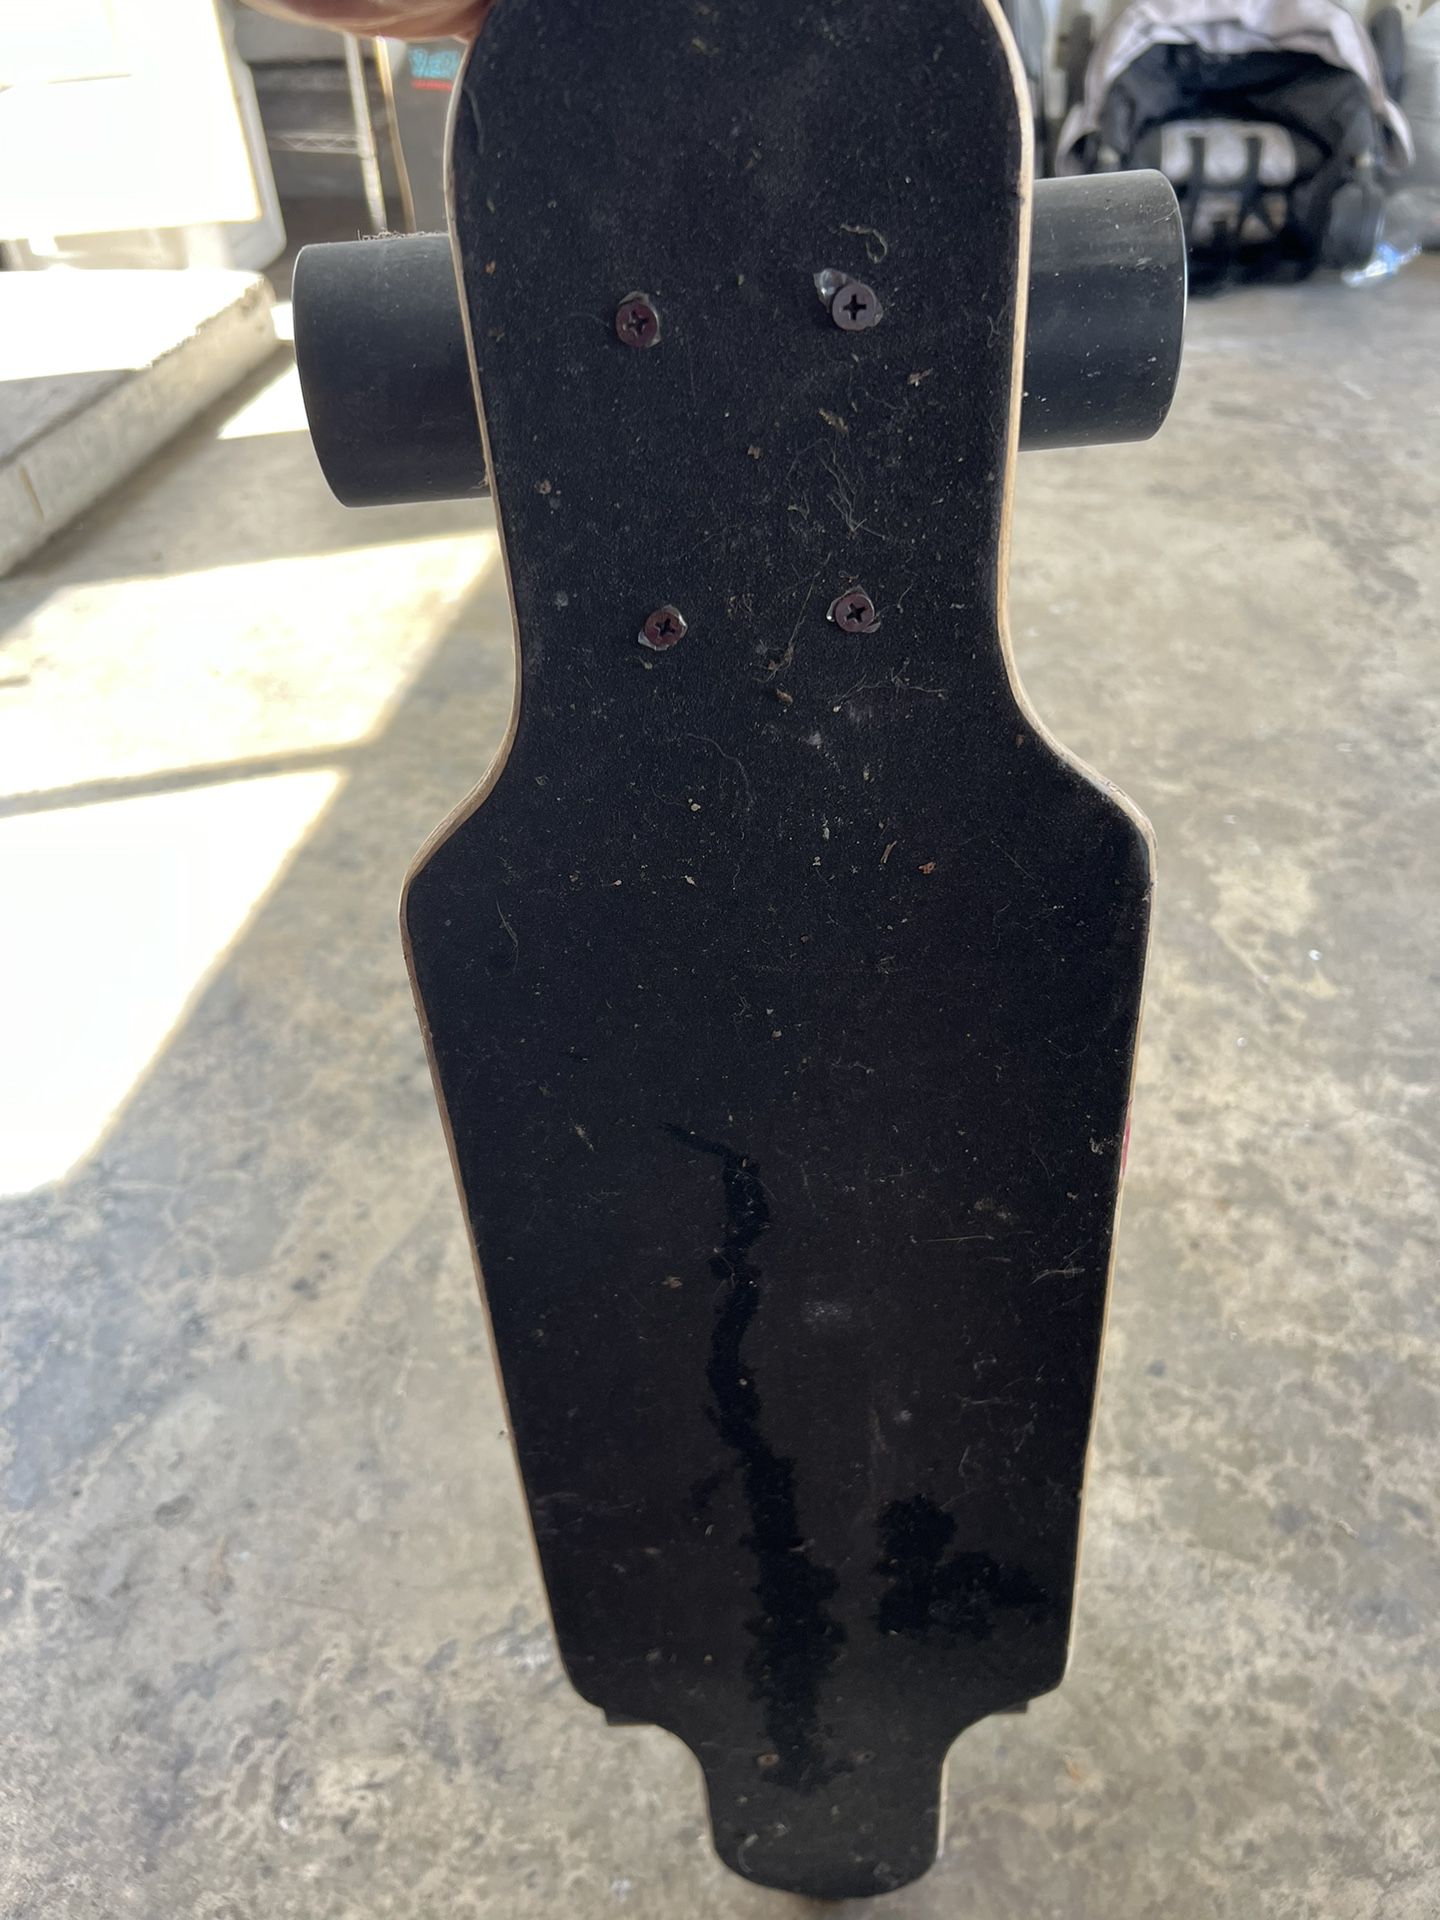 Skate Board 